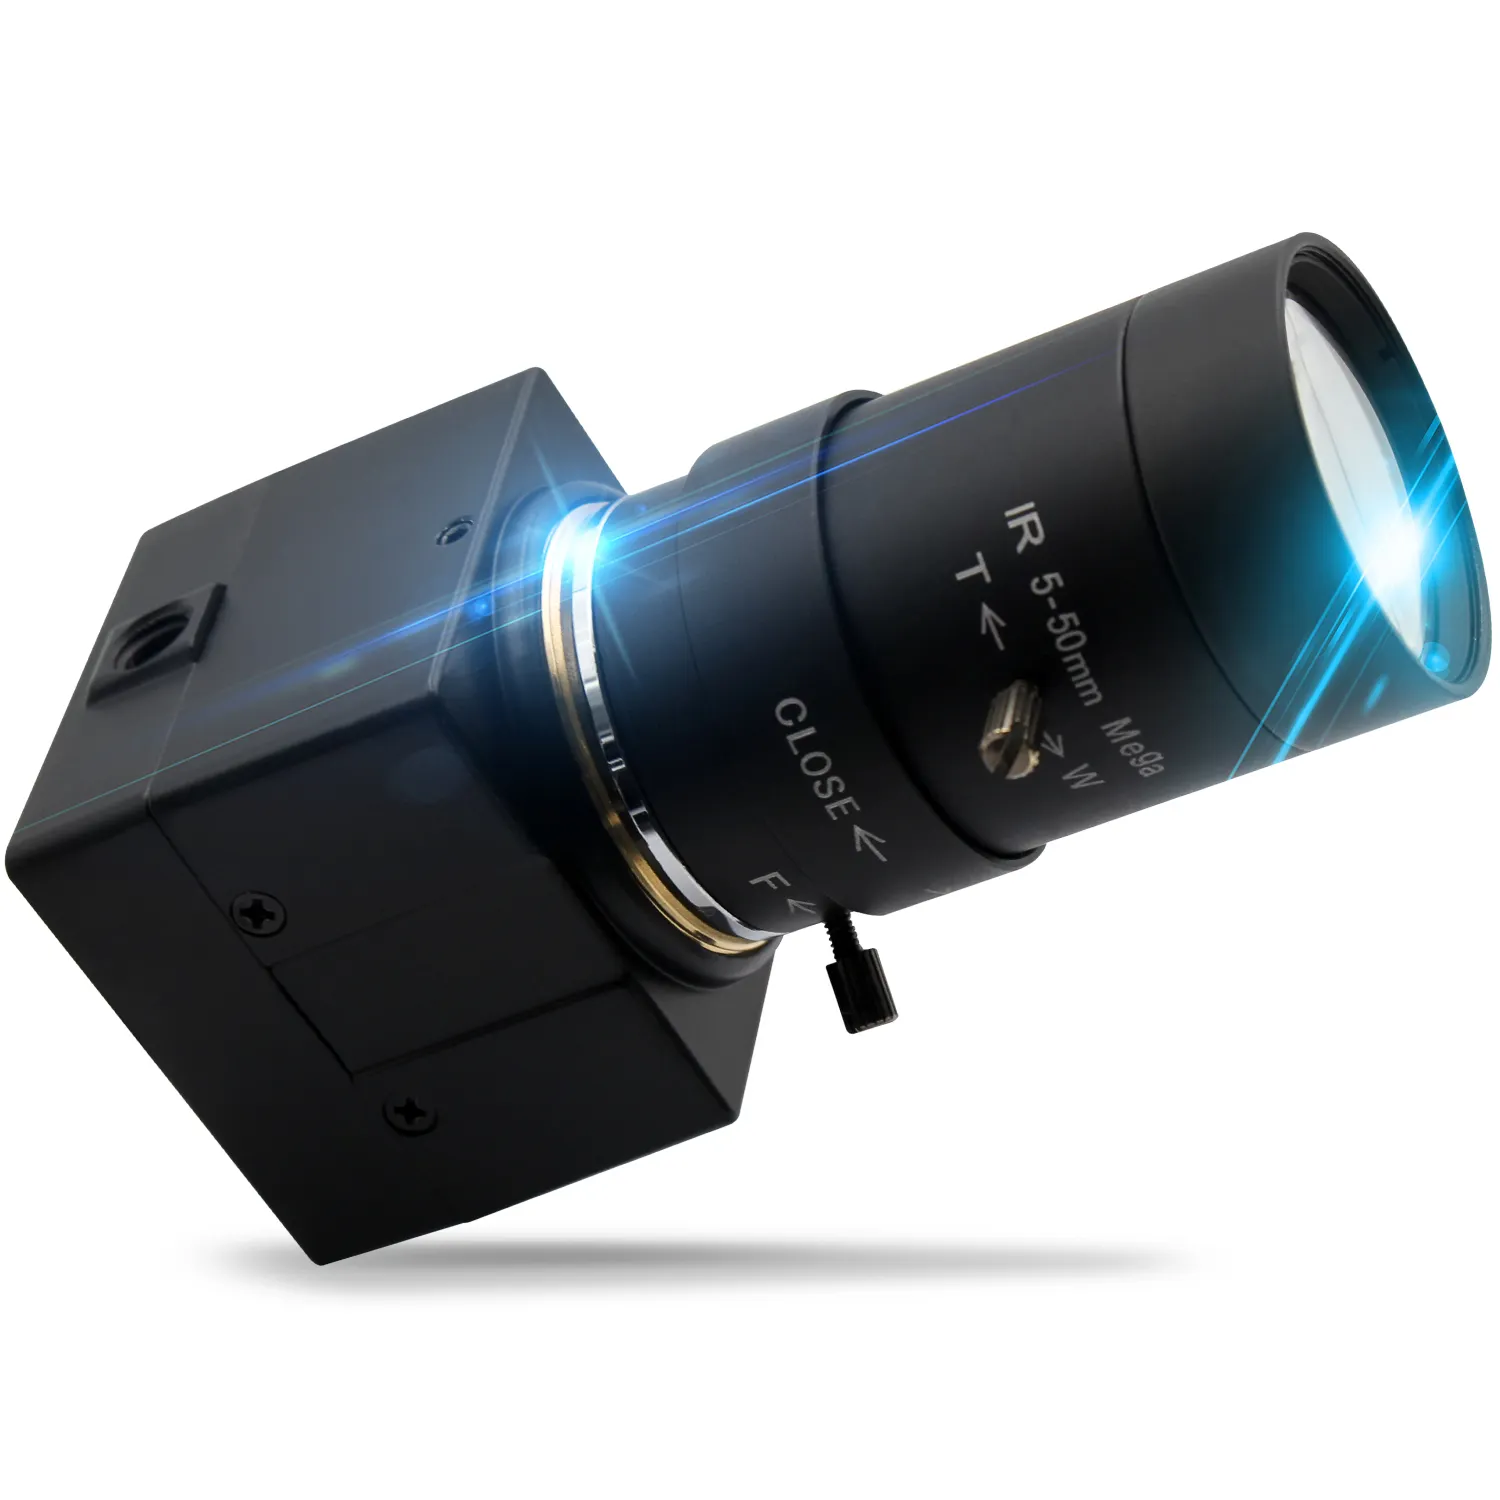 Caméra USB ELP 1280*720 OV9712 5-50mm objectif varifocal sécurité CCTV Surveillance machine vision caméra usb avec câble usb de 3 mètres